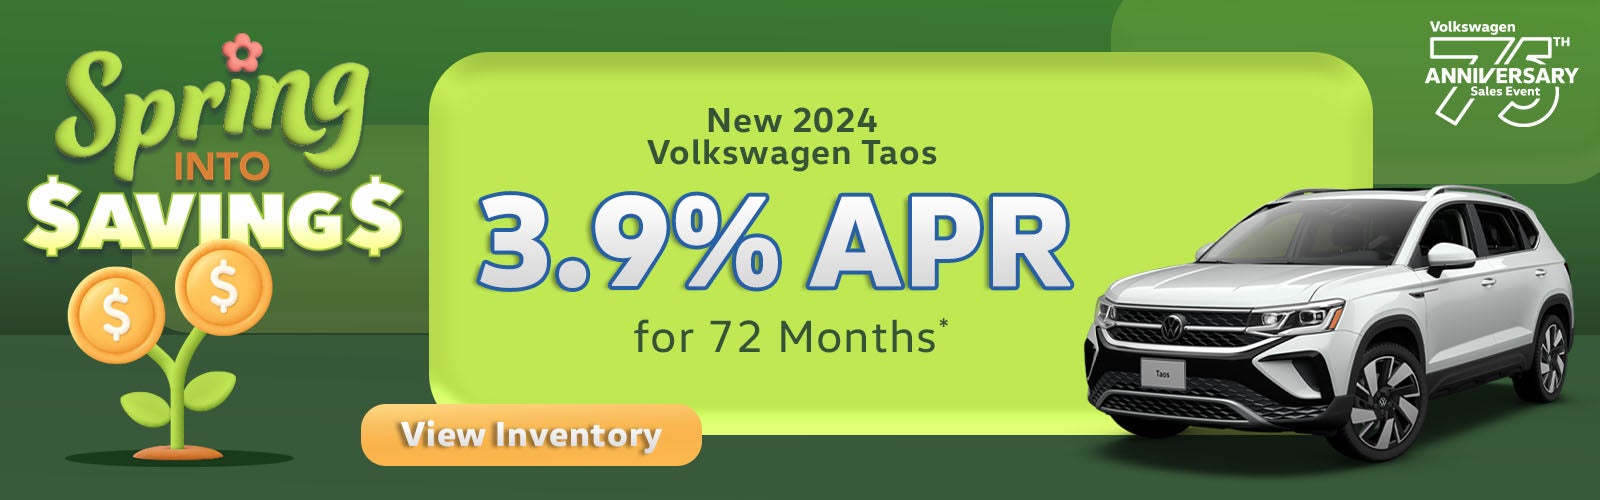 New 2024 Volkswagen Taos 